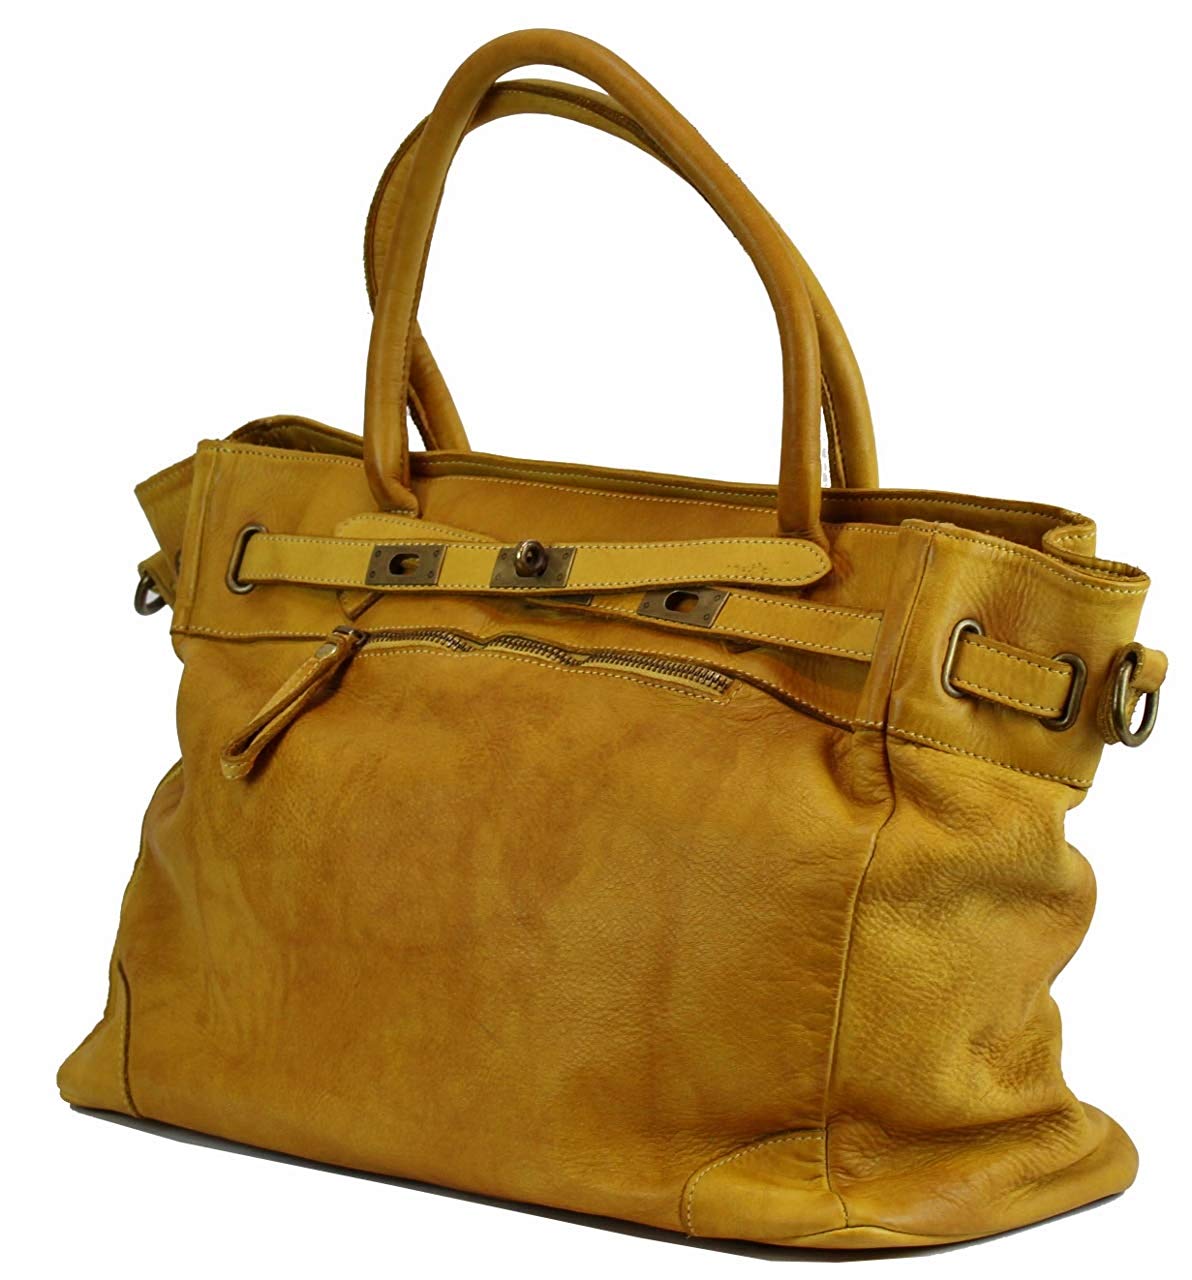 BZNA Bag Mila Gelb giallo vintage Italy Designer Business Damen Handtasche Ledertasche Schultertasche Tasche Leder Shopper Neu